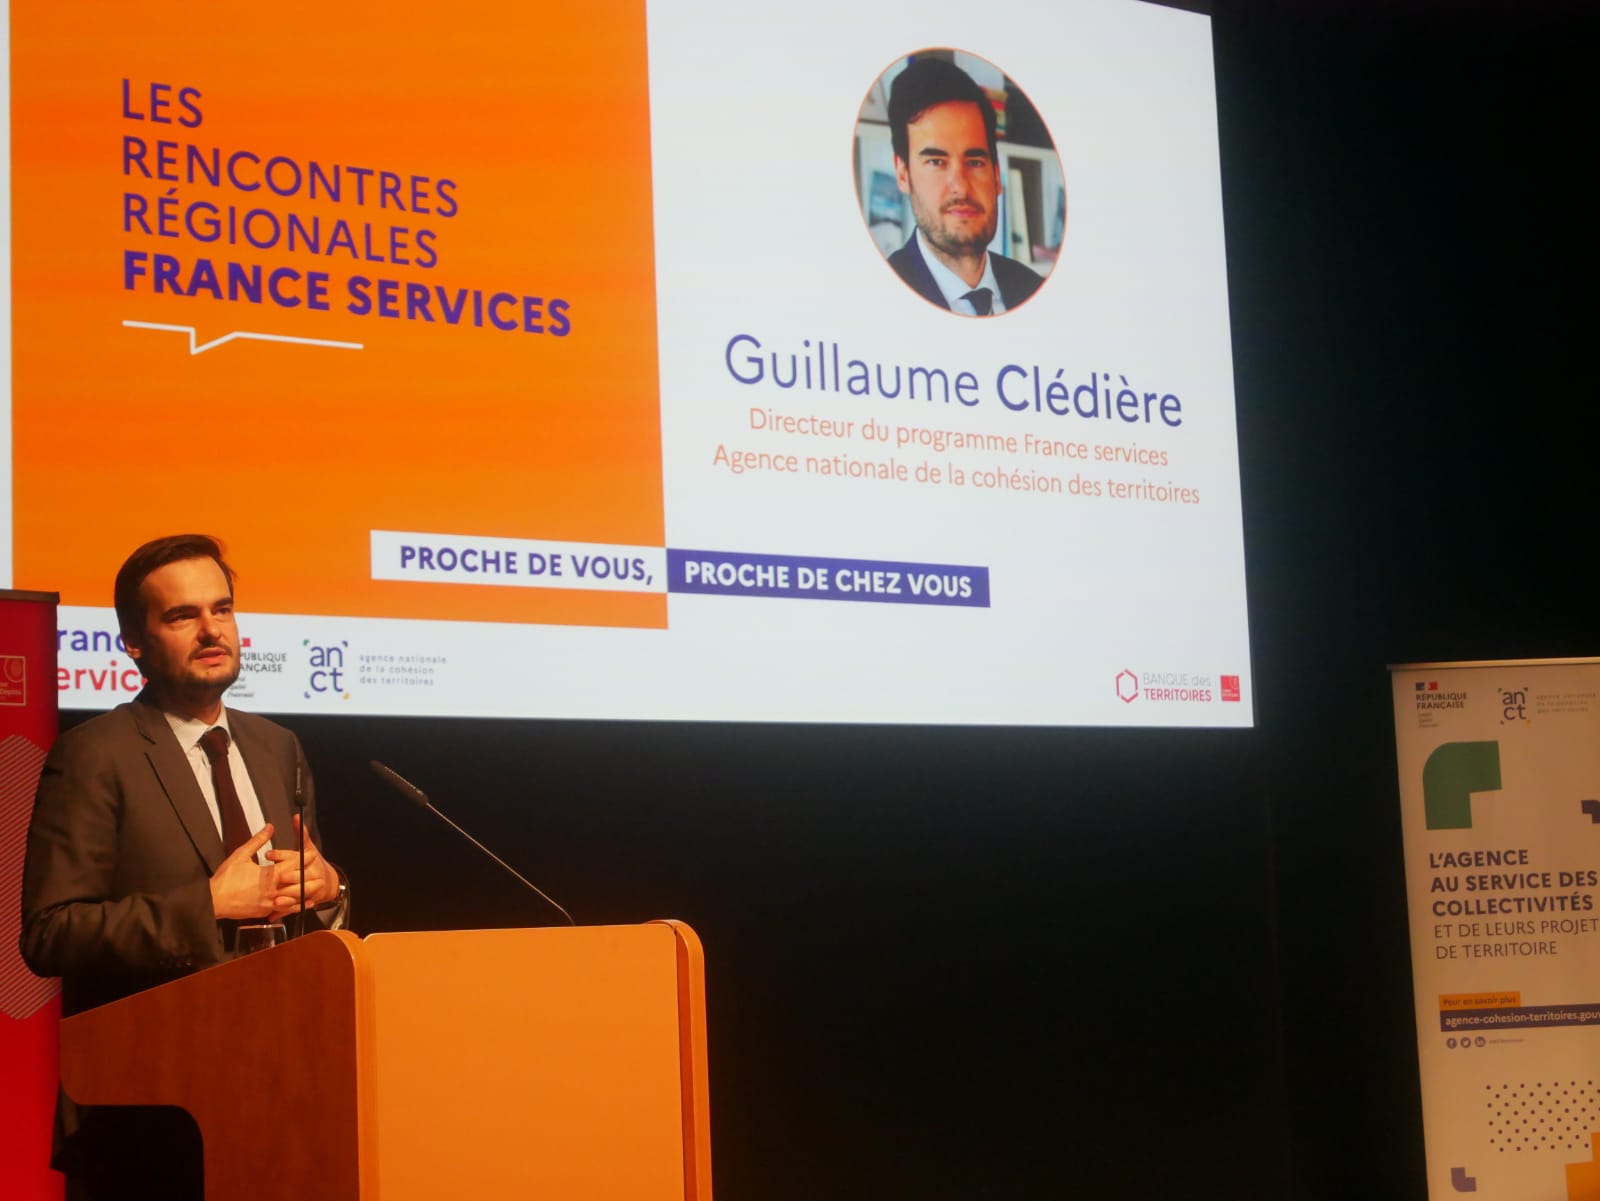 Guillaume Clédière parle à une tribune avec, derrière lui, un grand écranqui annononce l'événement  et présente sa fonction. 